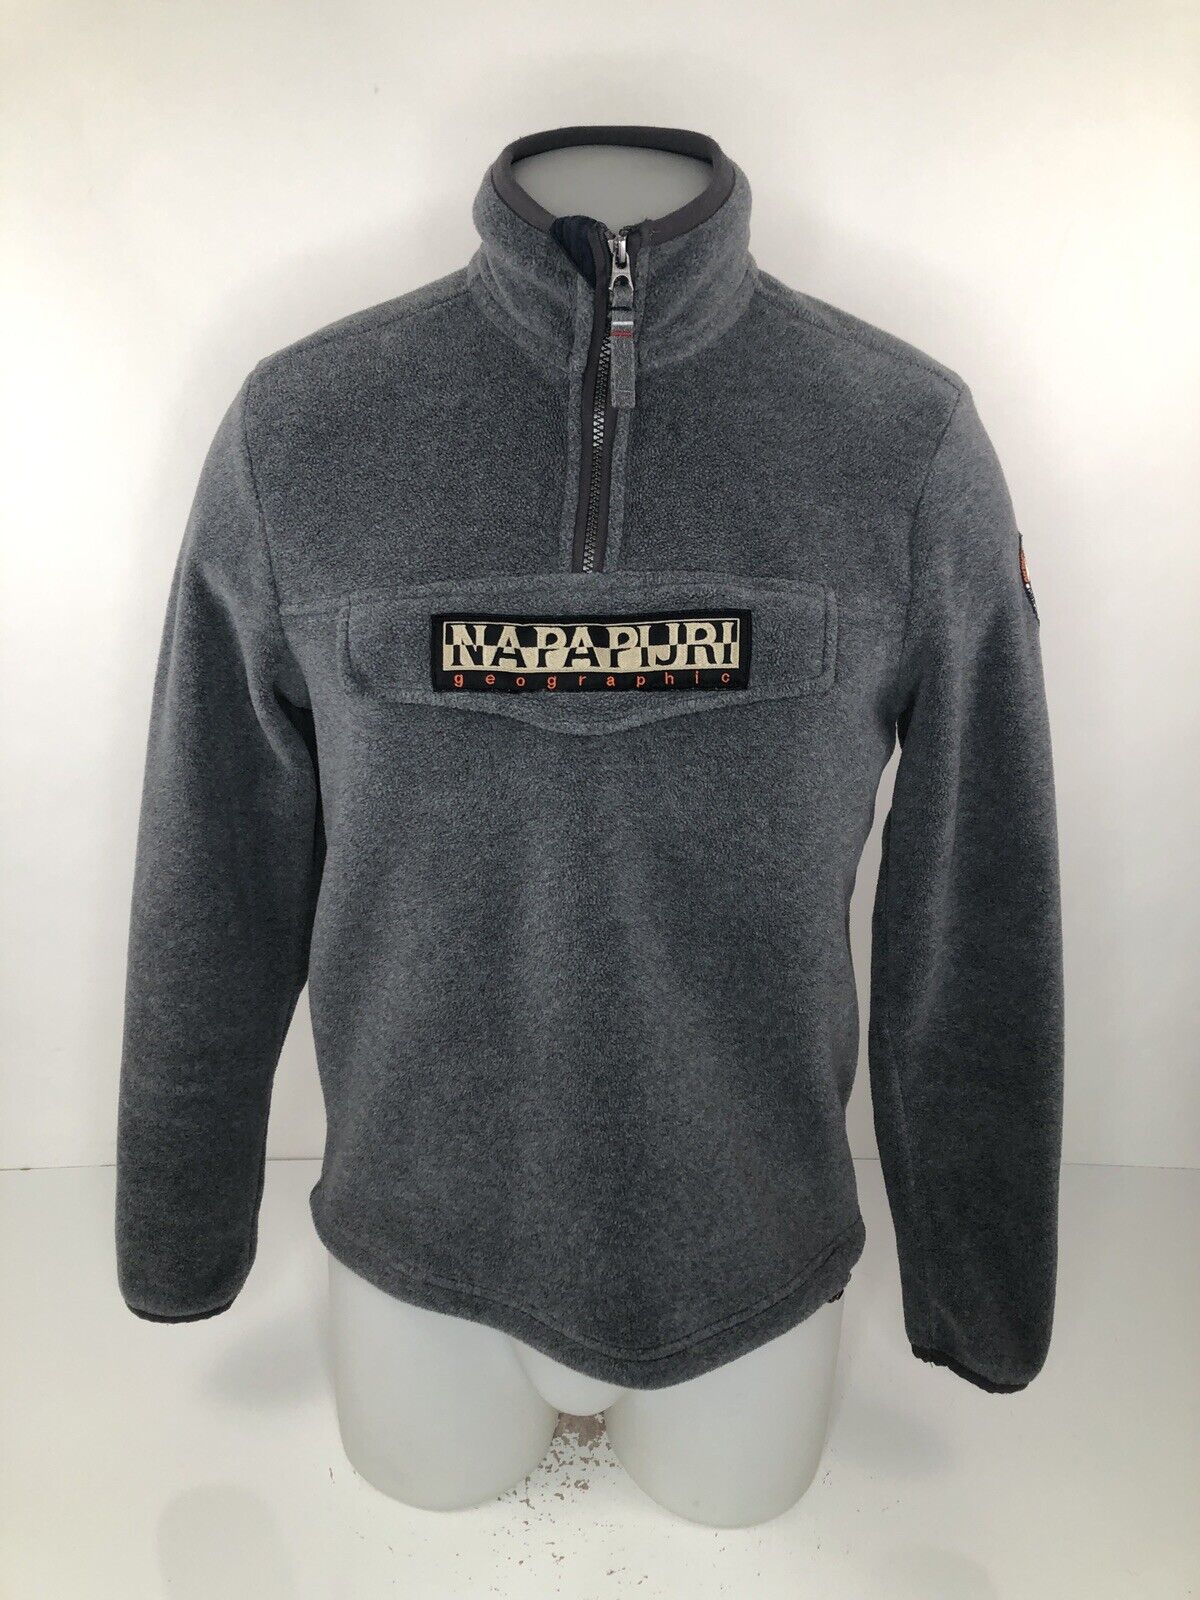 halvleder valse sammensværgelse NAPAPIJRI - Chest Pocket Fleece ADULT XS Pullover Sweater Jacket | eBay